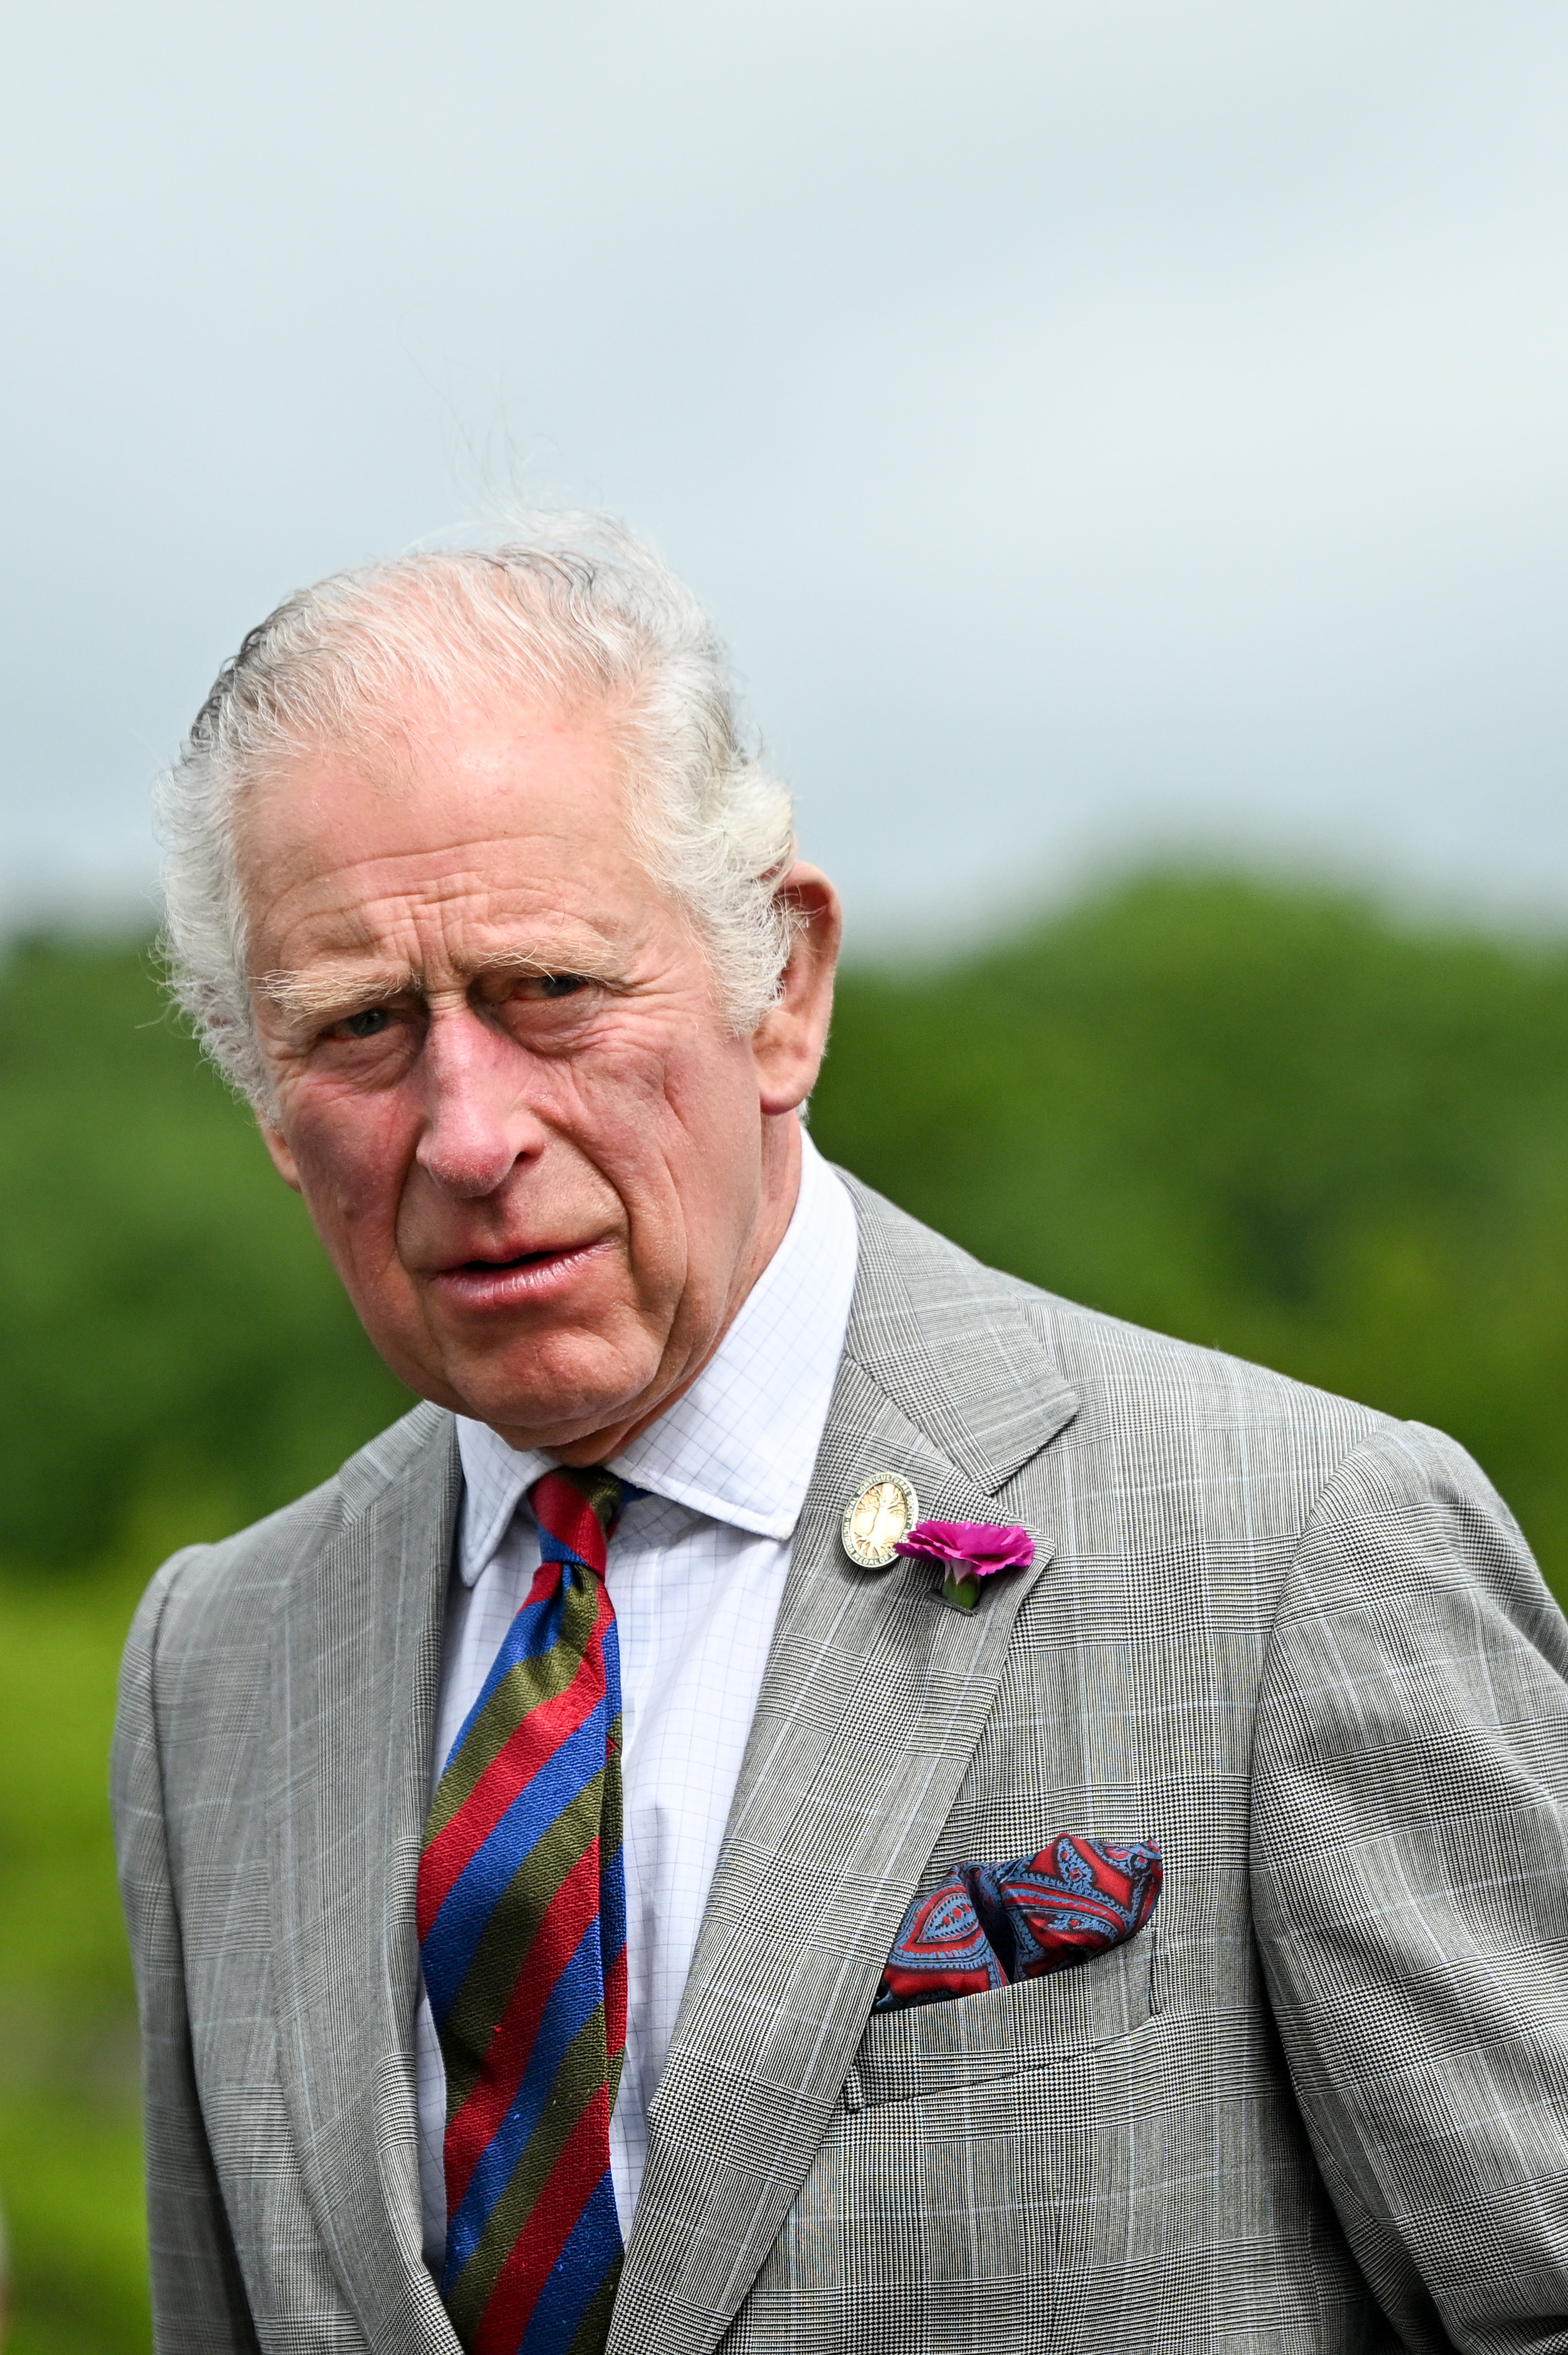 Le prince Charles, alors prince de Galles, lors d'une visite au jardin botanique national du Pays de Galles à Llanarthne, au Pays de Galles, le 06 juillet 2022 | Source : Getty Images